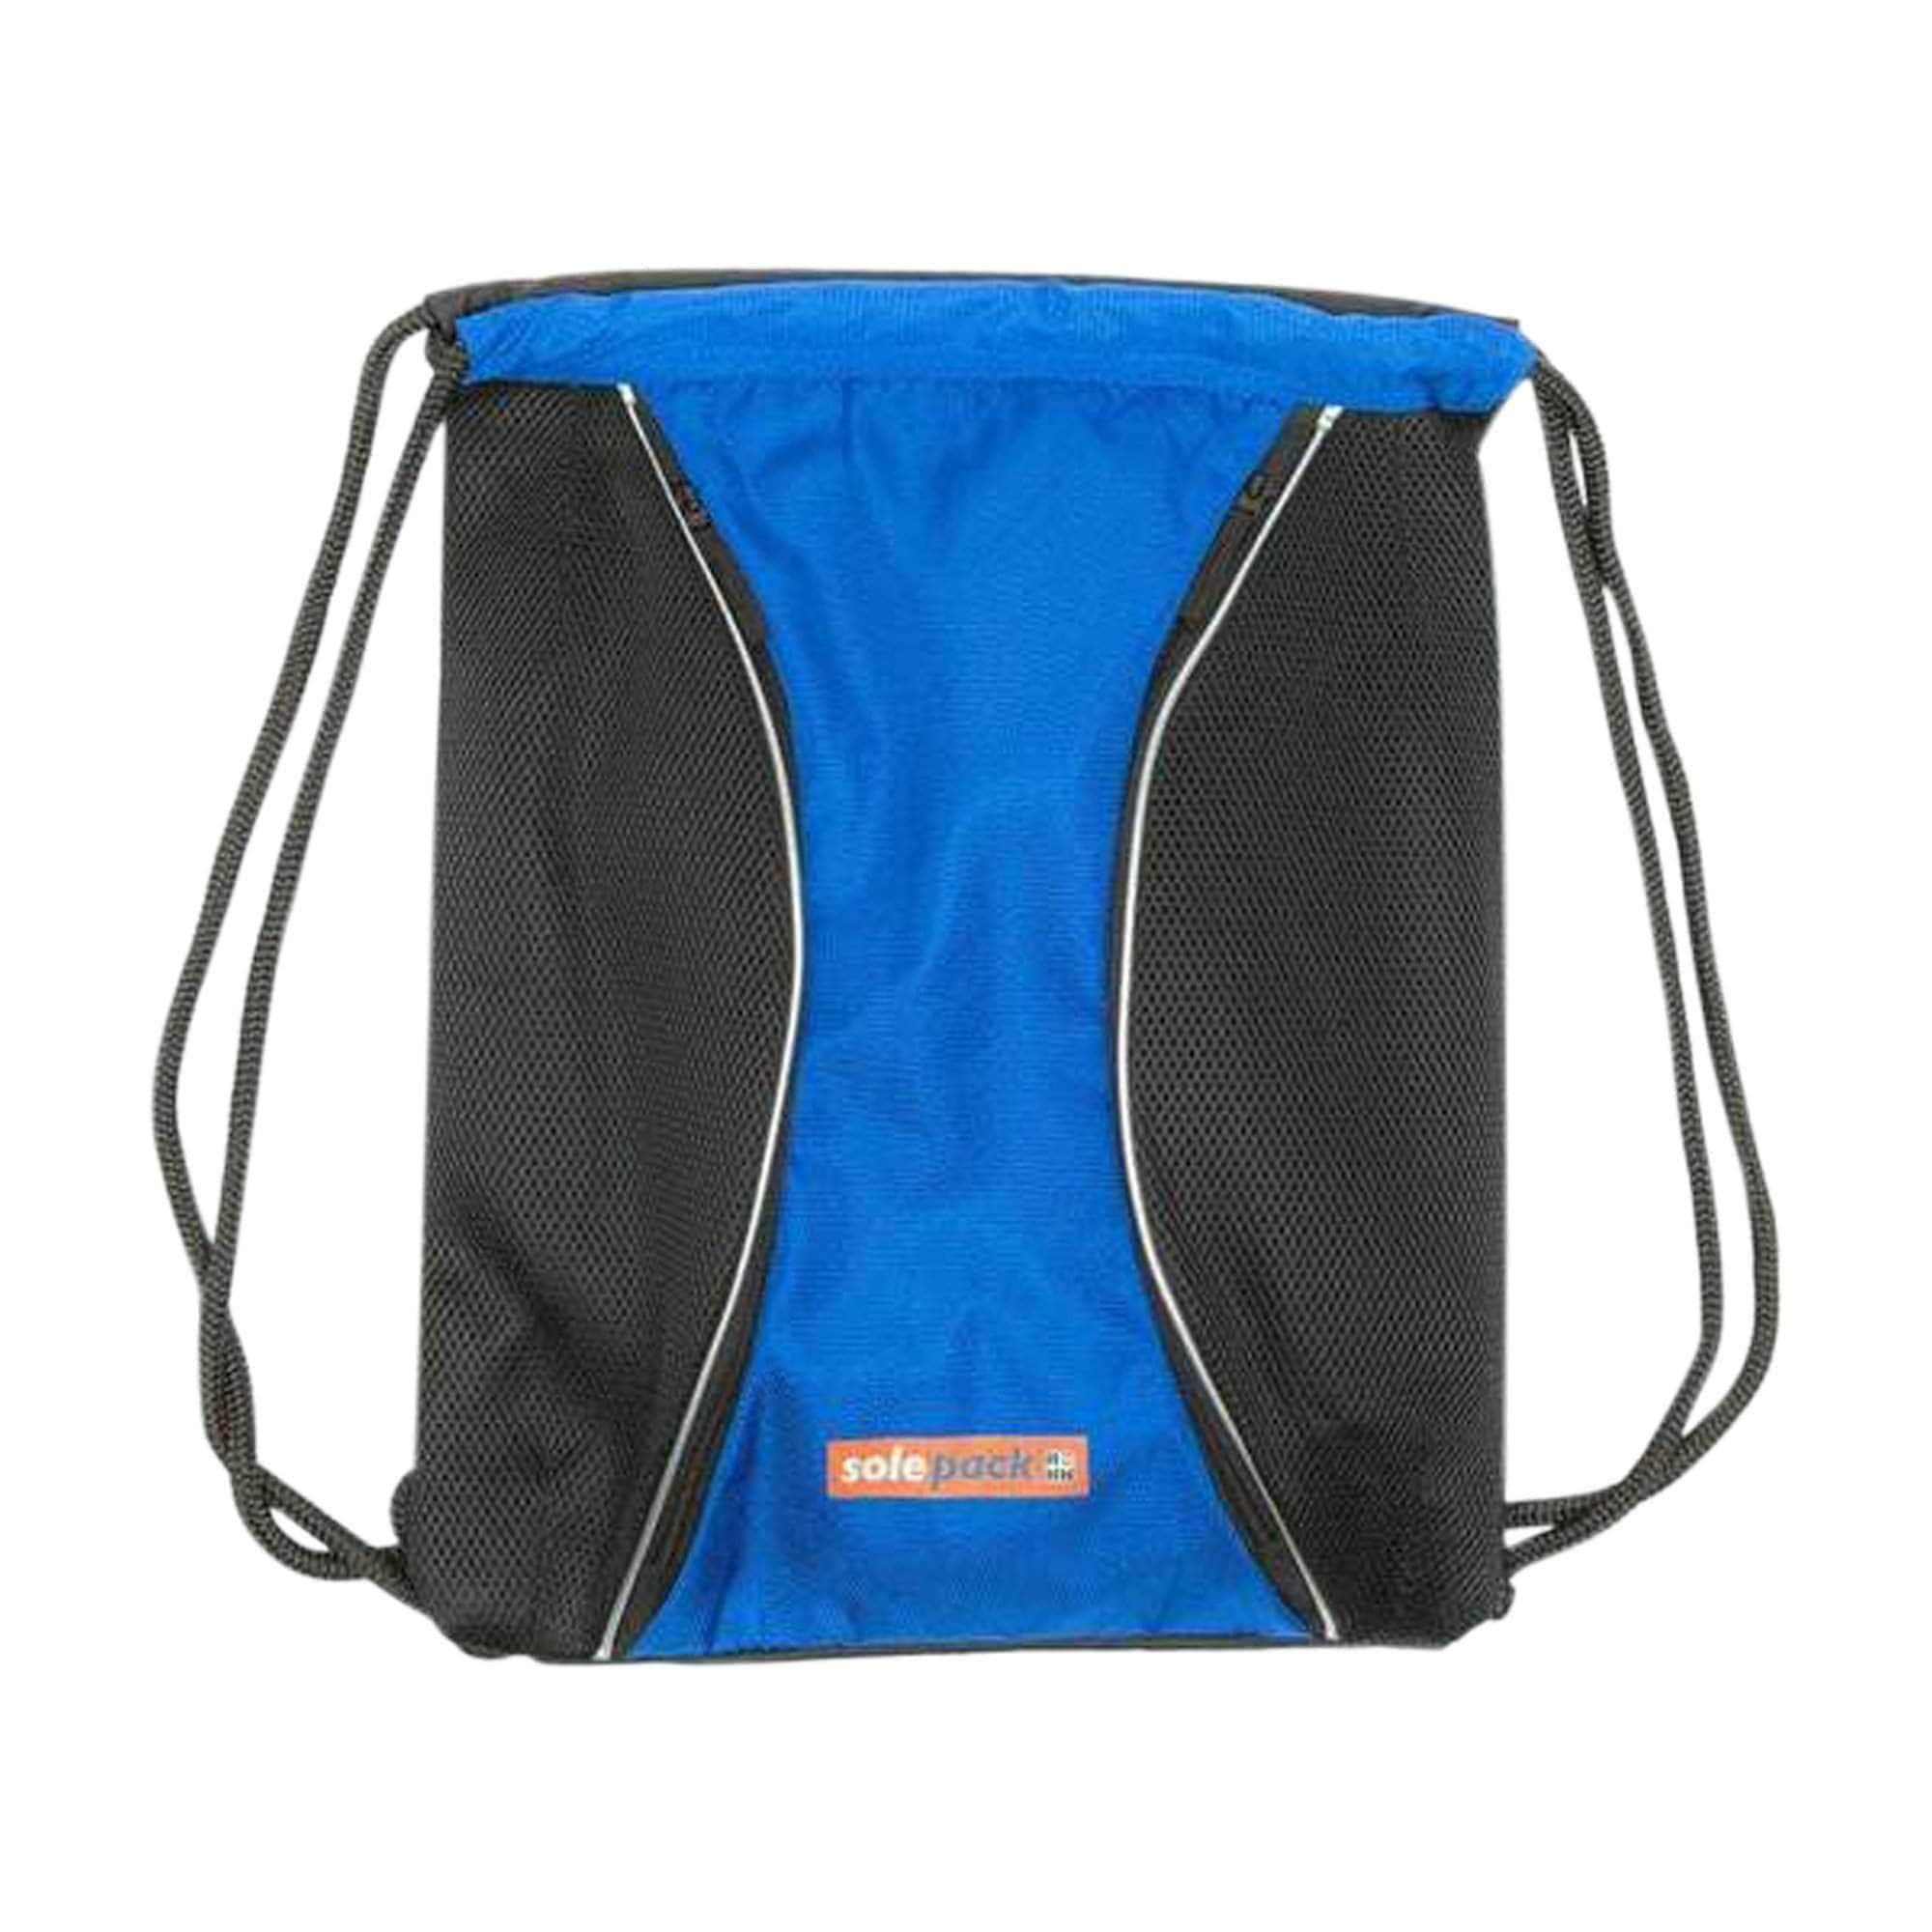 Solepack GRF+ - Stringbags